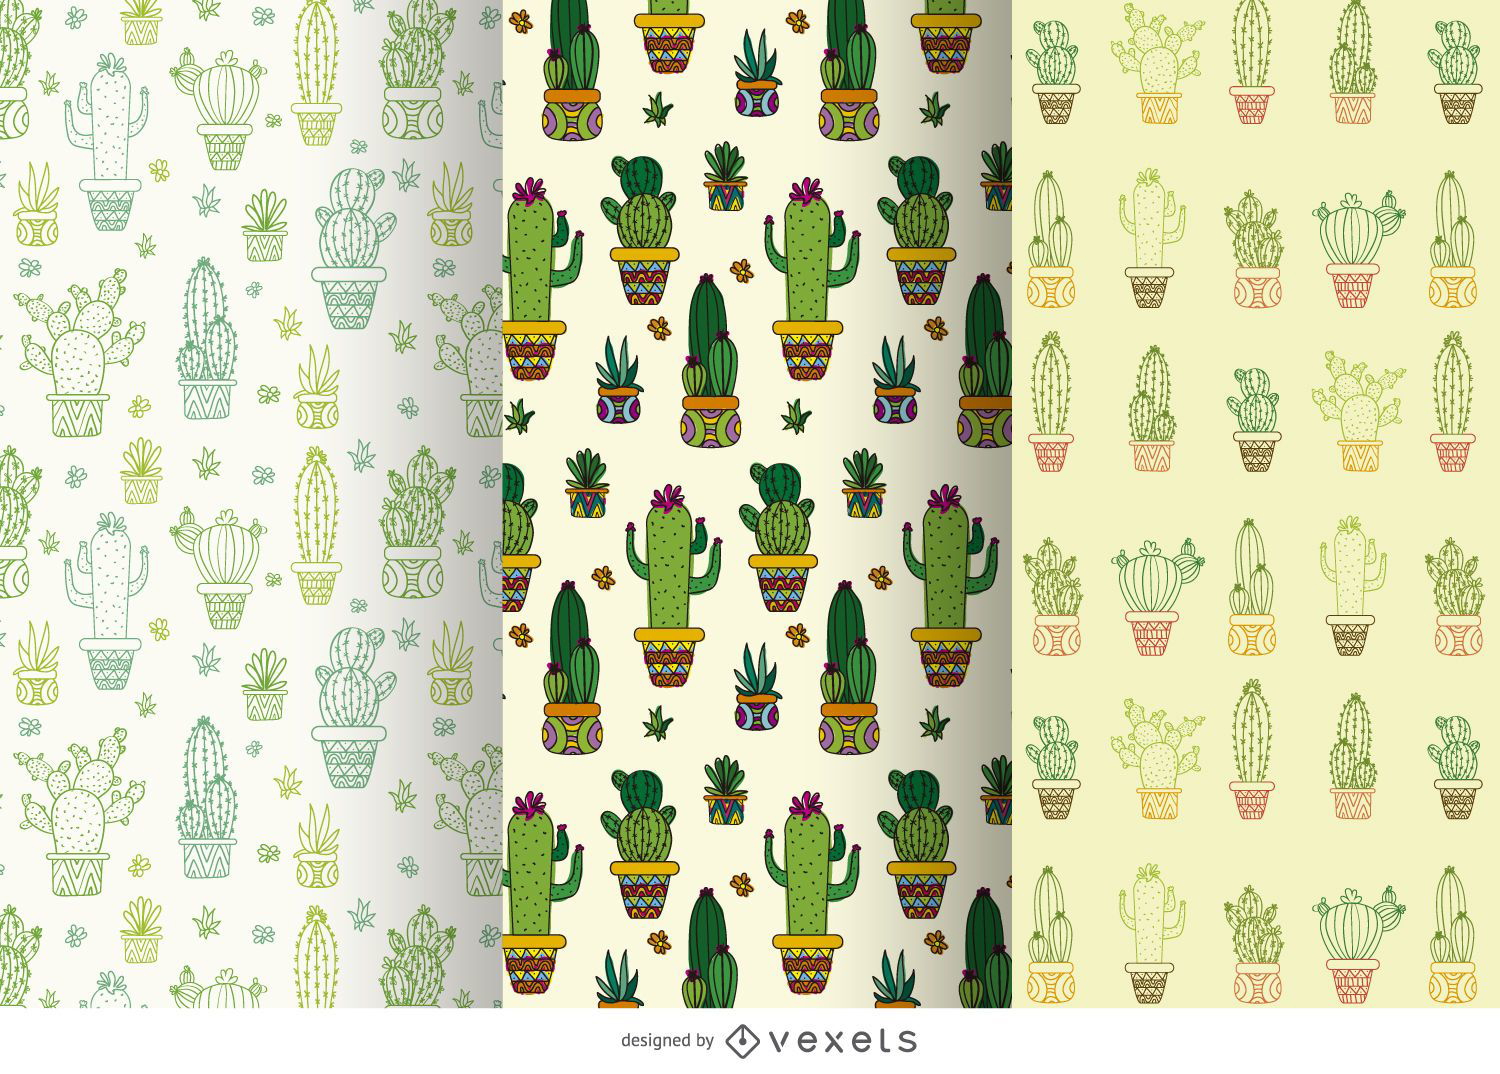 Cactus pattern set